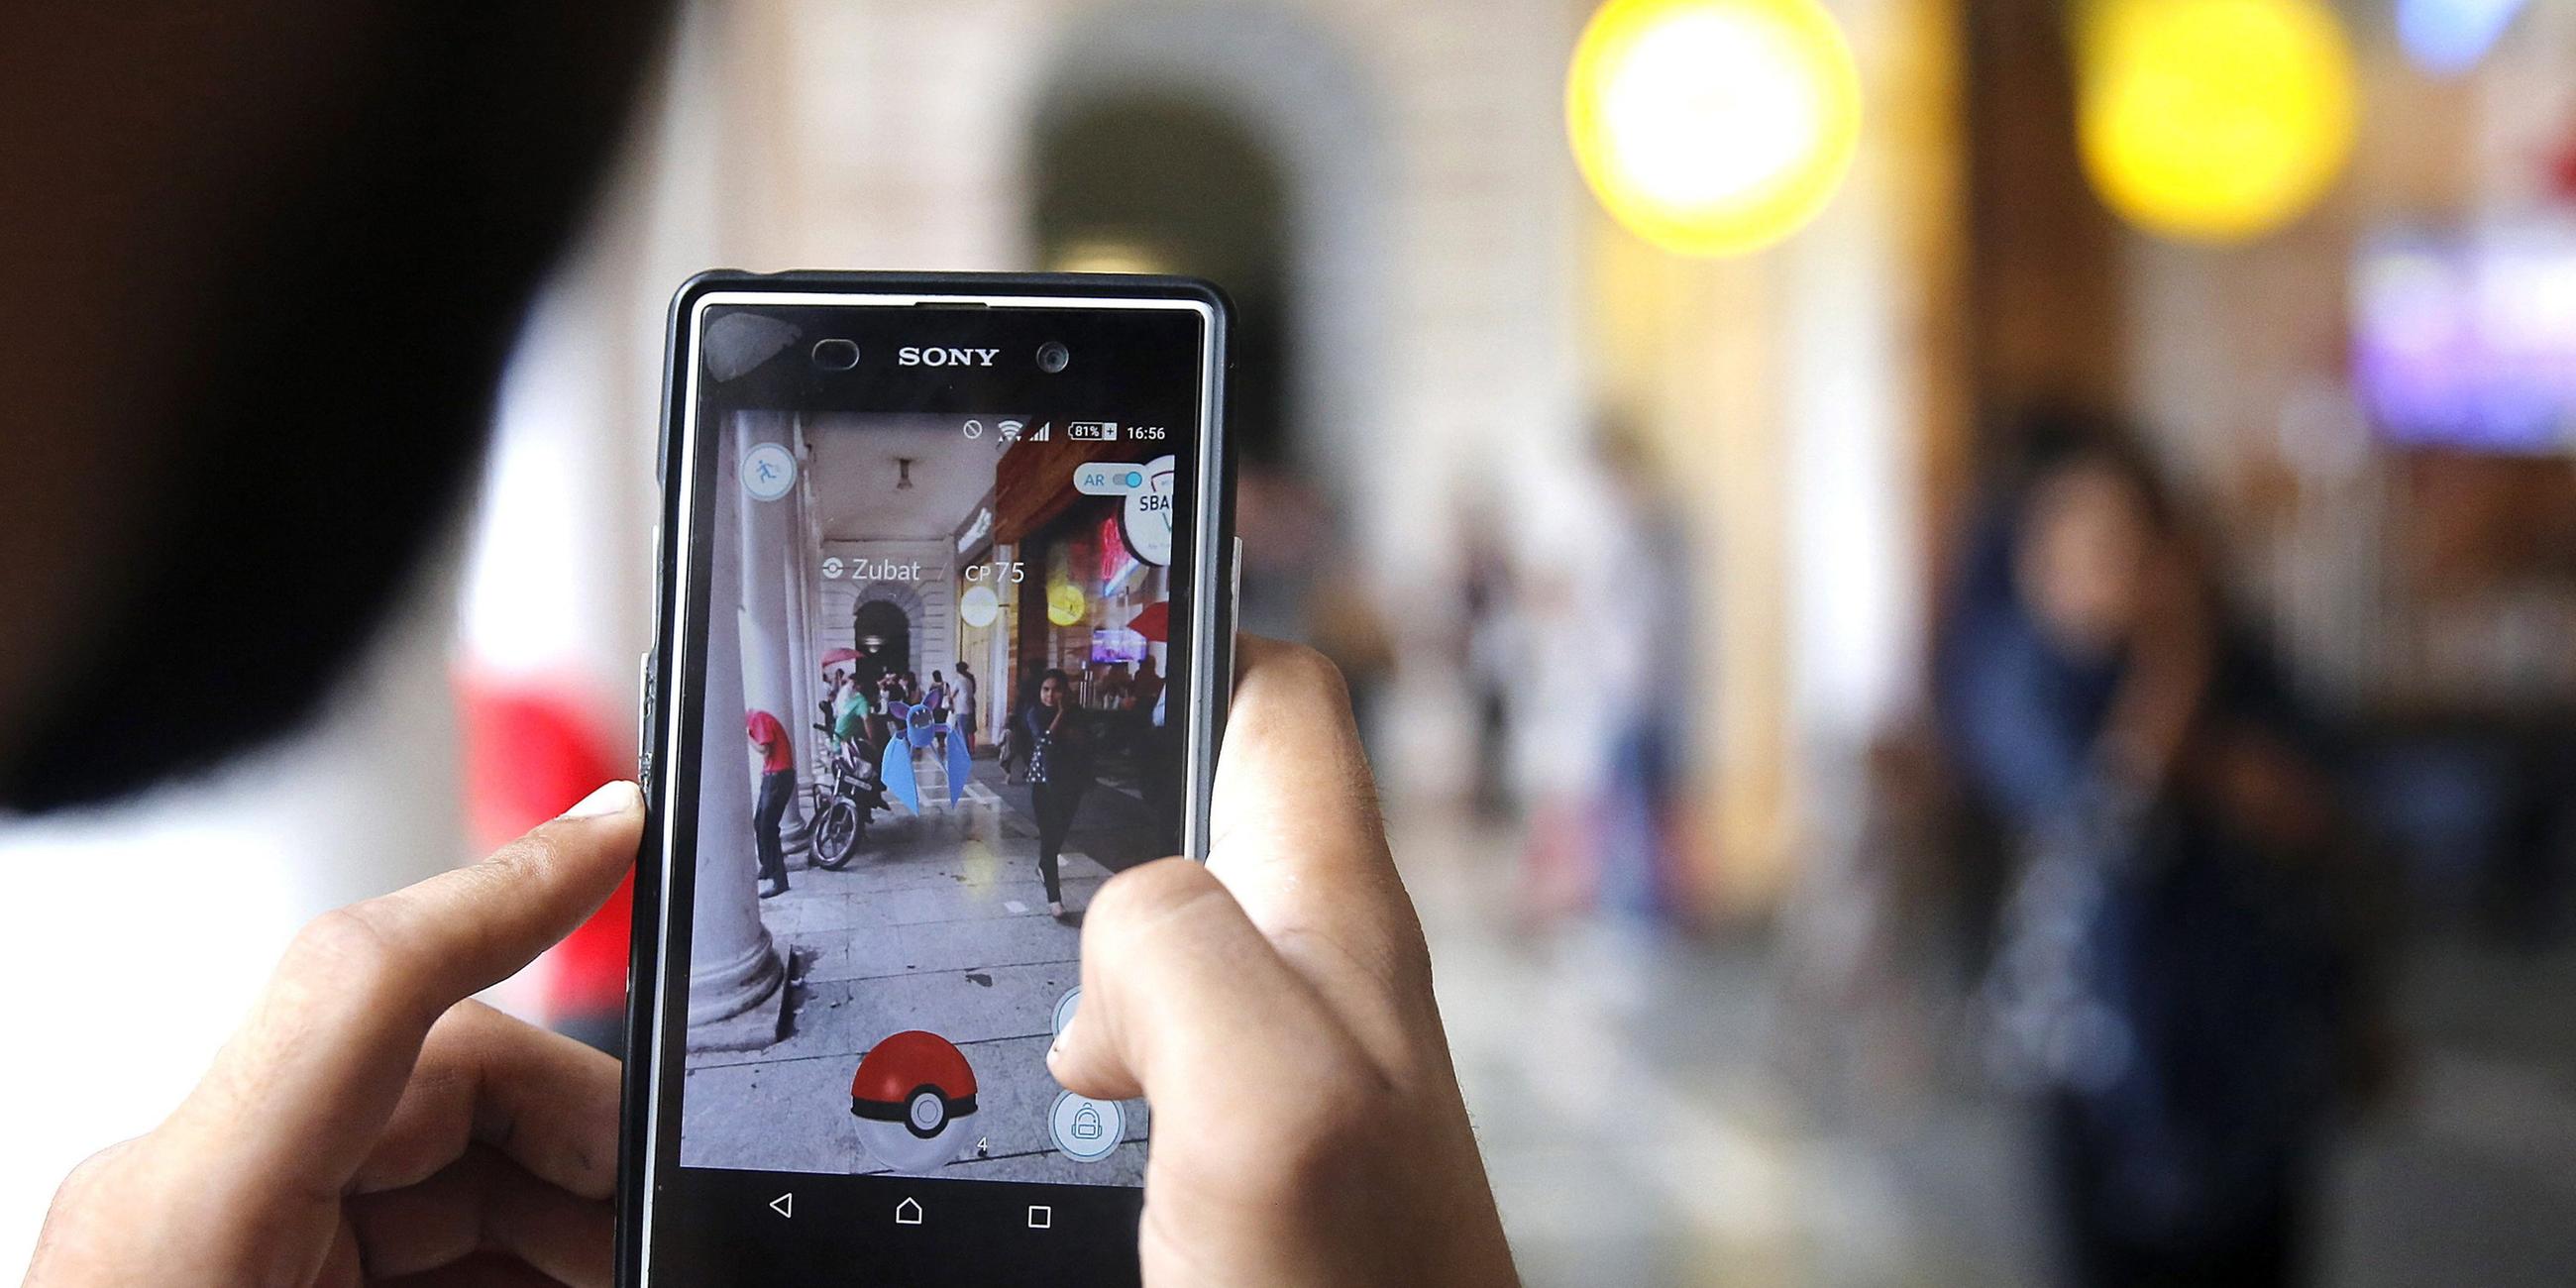 "Firmen am Abgrund: Nintendo": Display eines Handys, auf dem das Spiel Pokémon Go zu sehen ist.